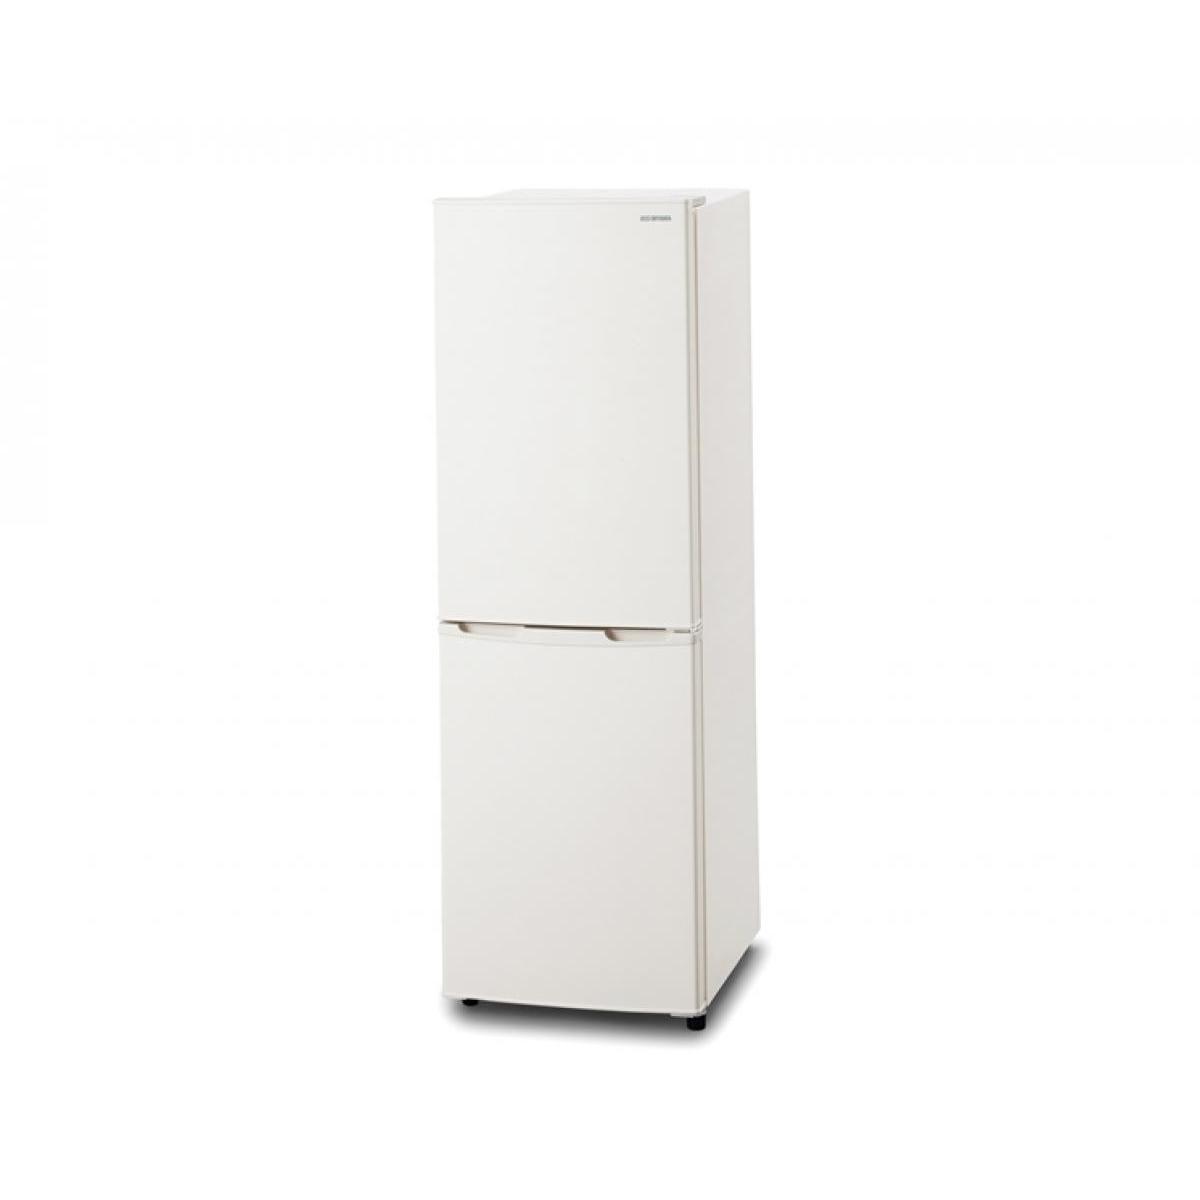 【楽天市場】アイリスオーヤマ IRIS ファン式冷蔵庫 274L IRSN-27A